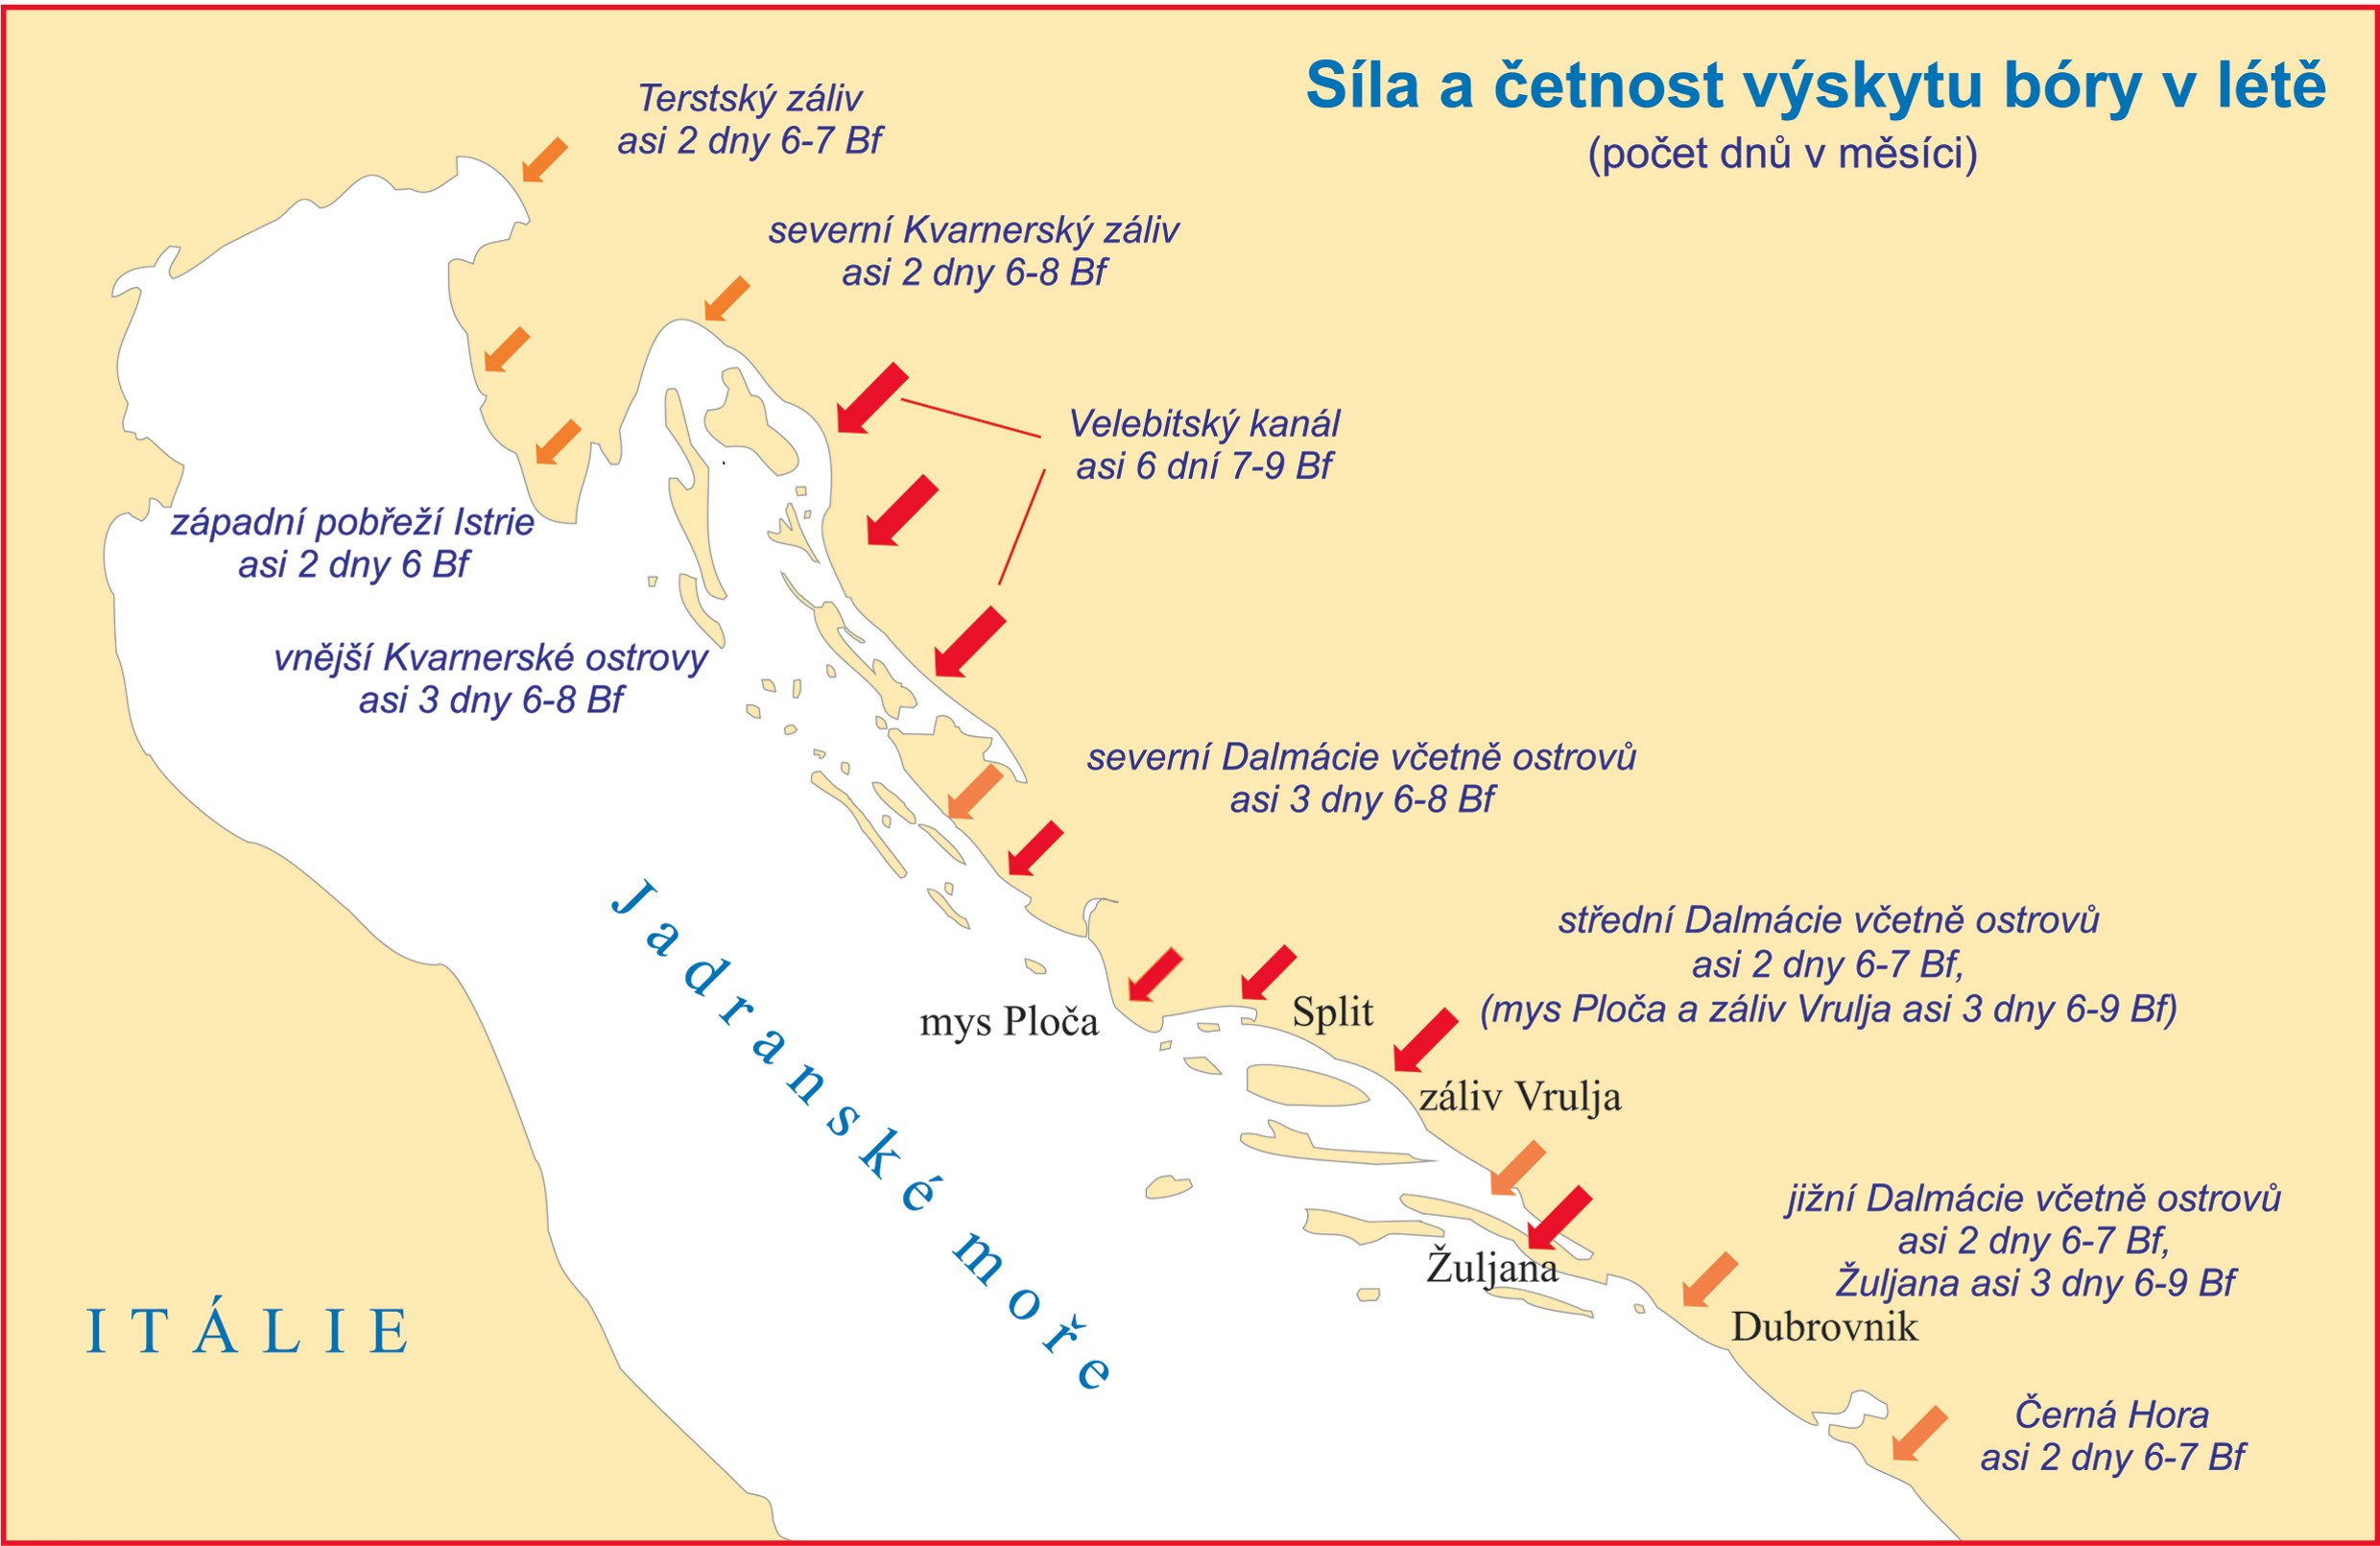 Mapa ukazující sílu a četnost výskytu bóry v létě v Jadranském moři